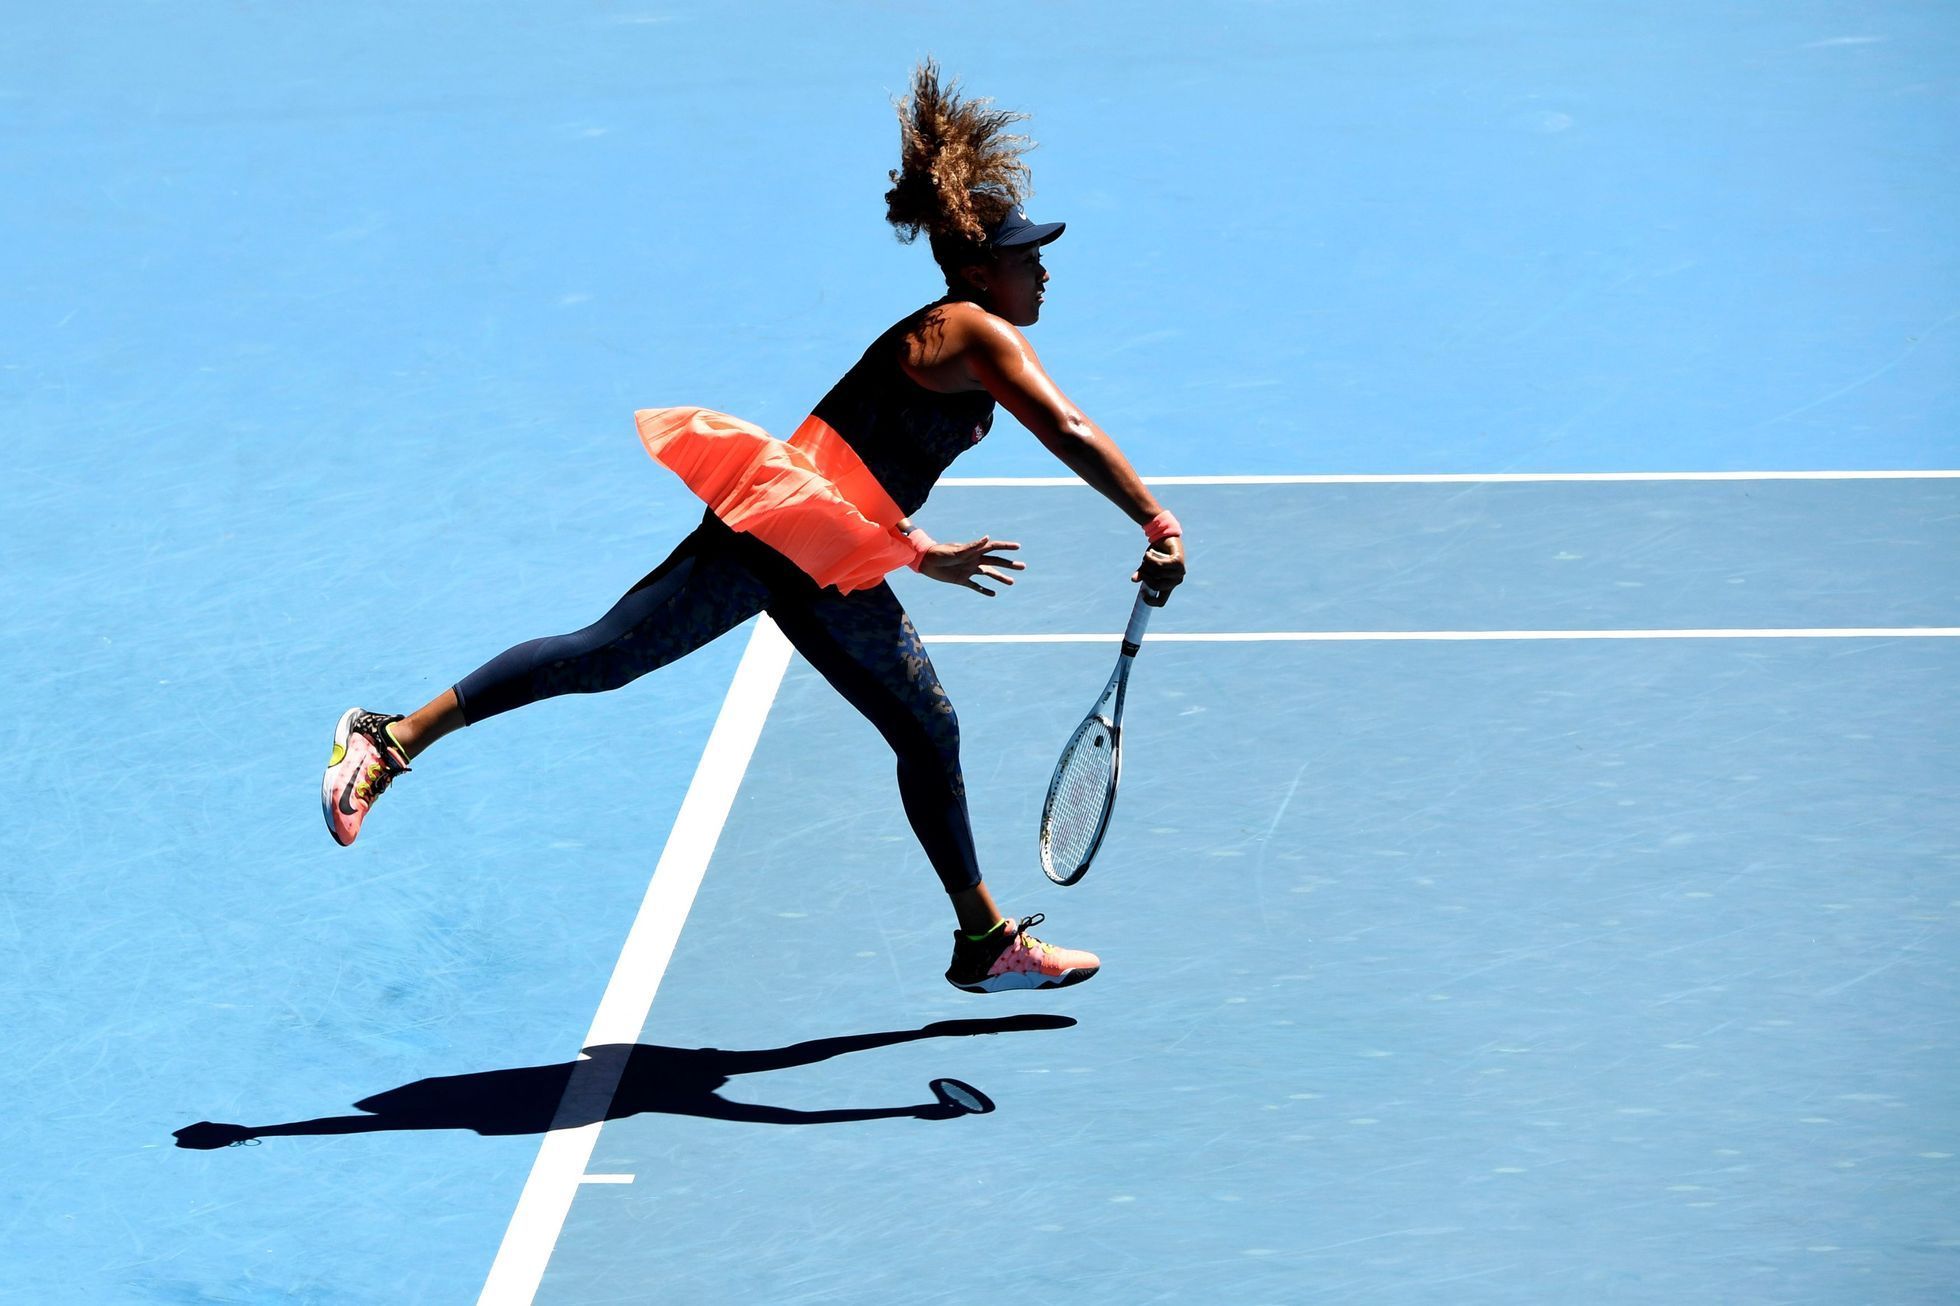 Naomi Ósakaová v semifinále Australian Open 2021